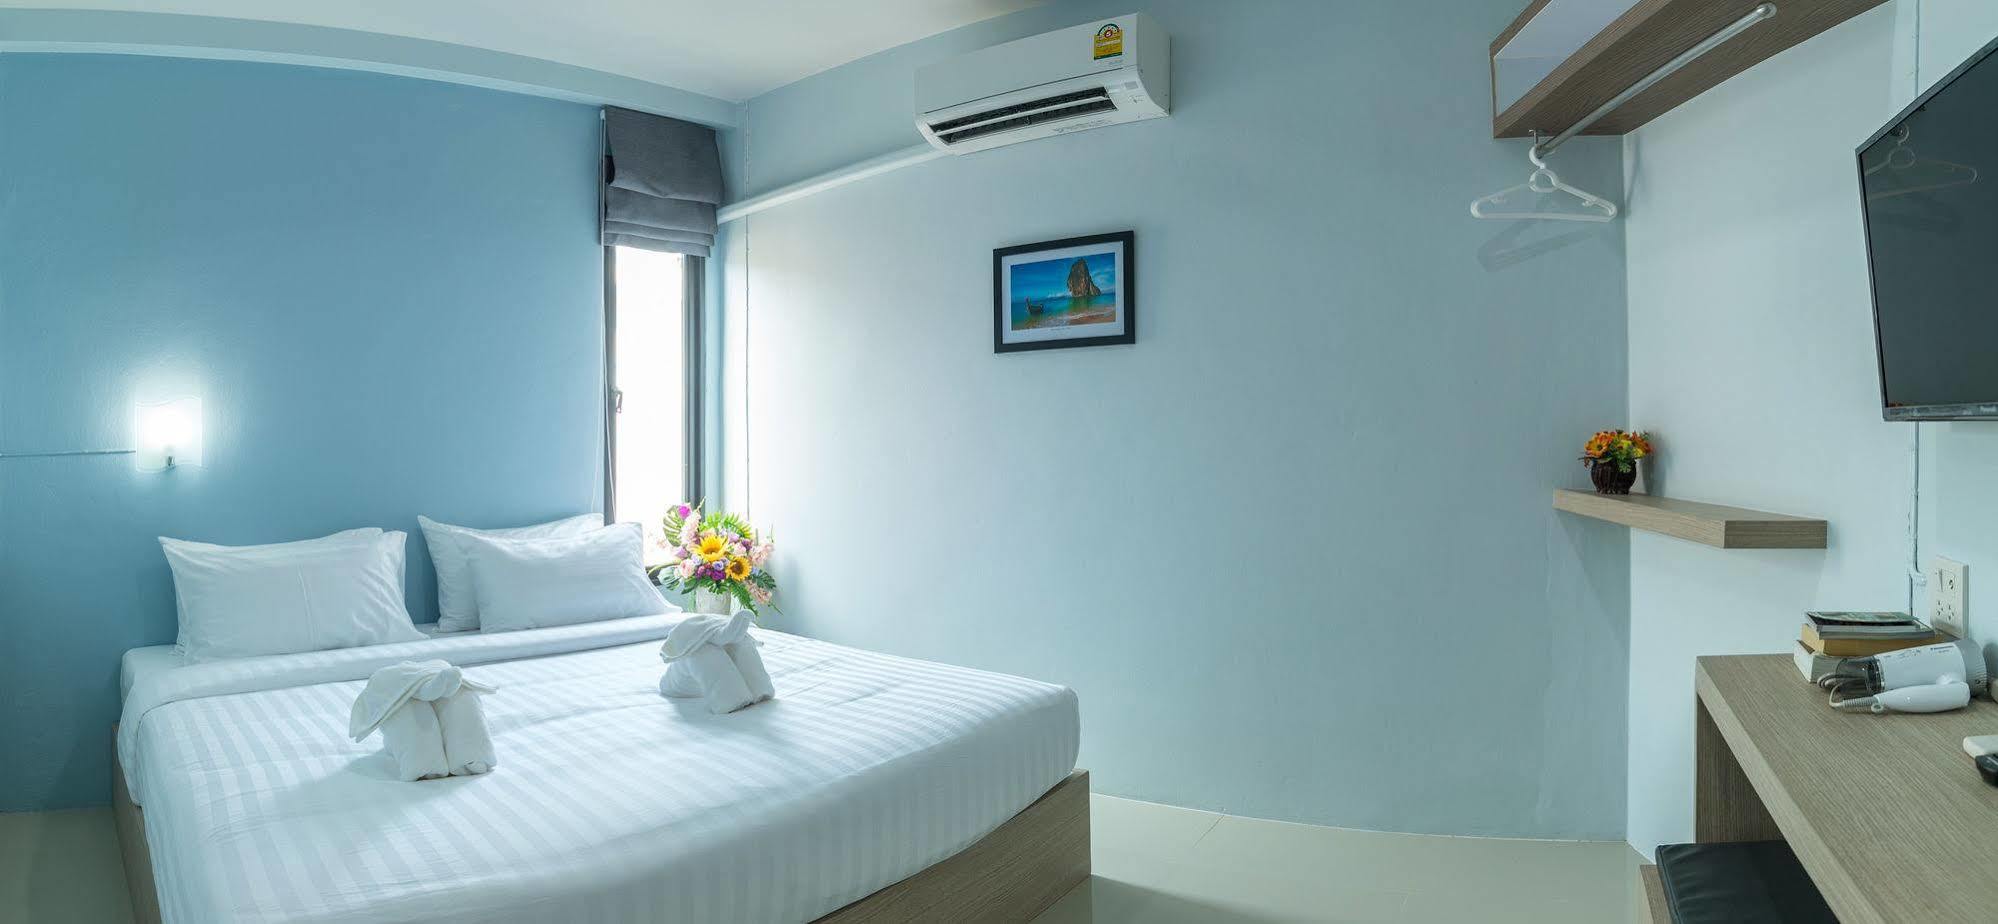 Lada Krabi Express Hotel Eksteriør billede